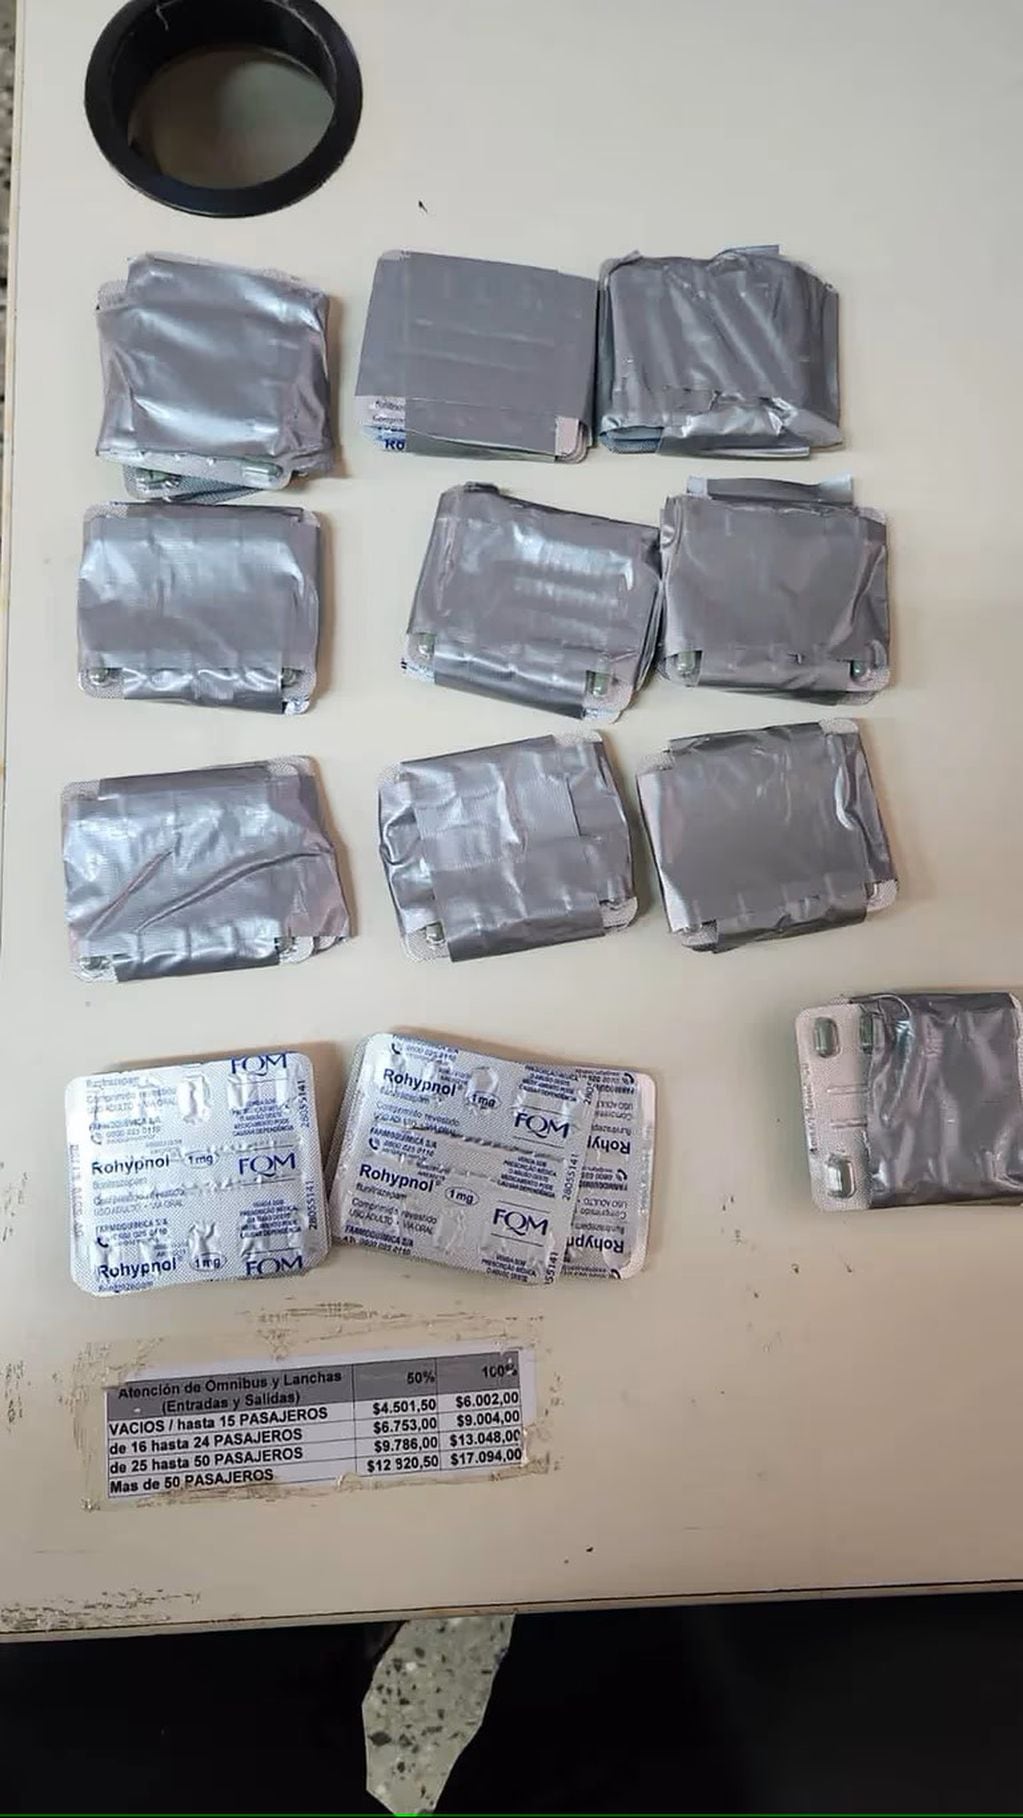 La pareja intentaba ingresar al país un cargamento de 3,100 pastillas de Flunitrazepam, también conocido como Rohypnol. Foto: Infobae.